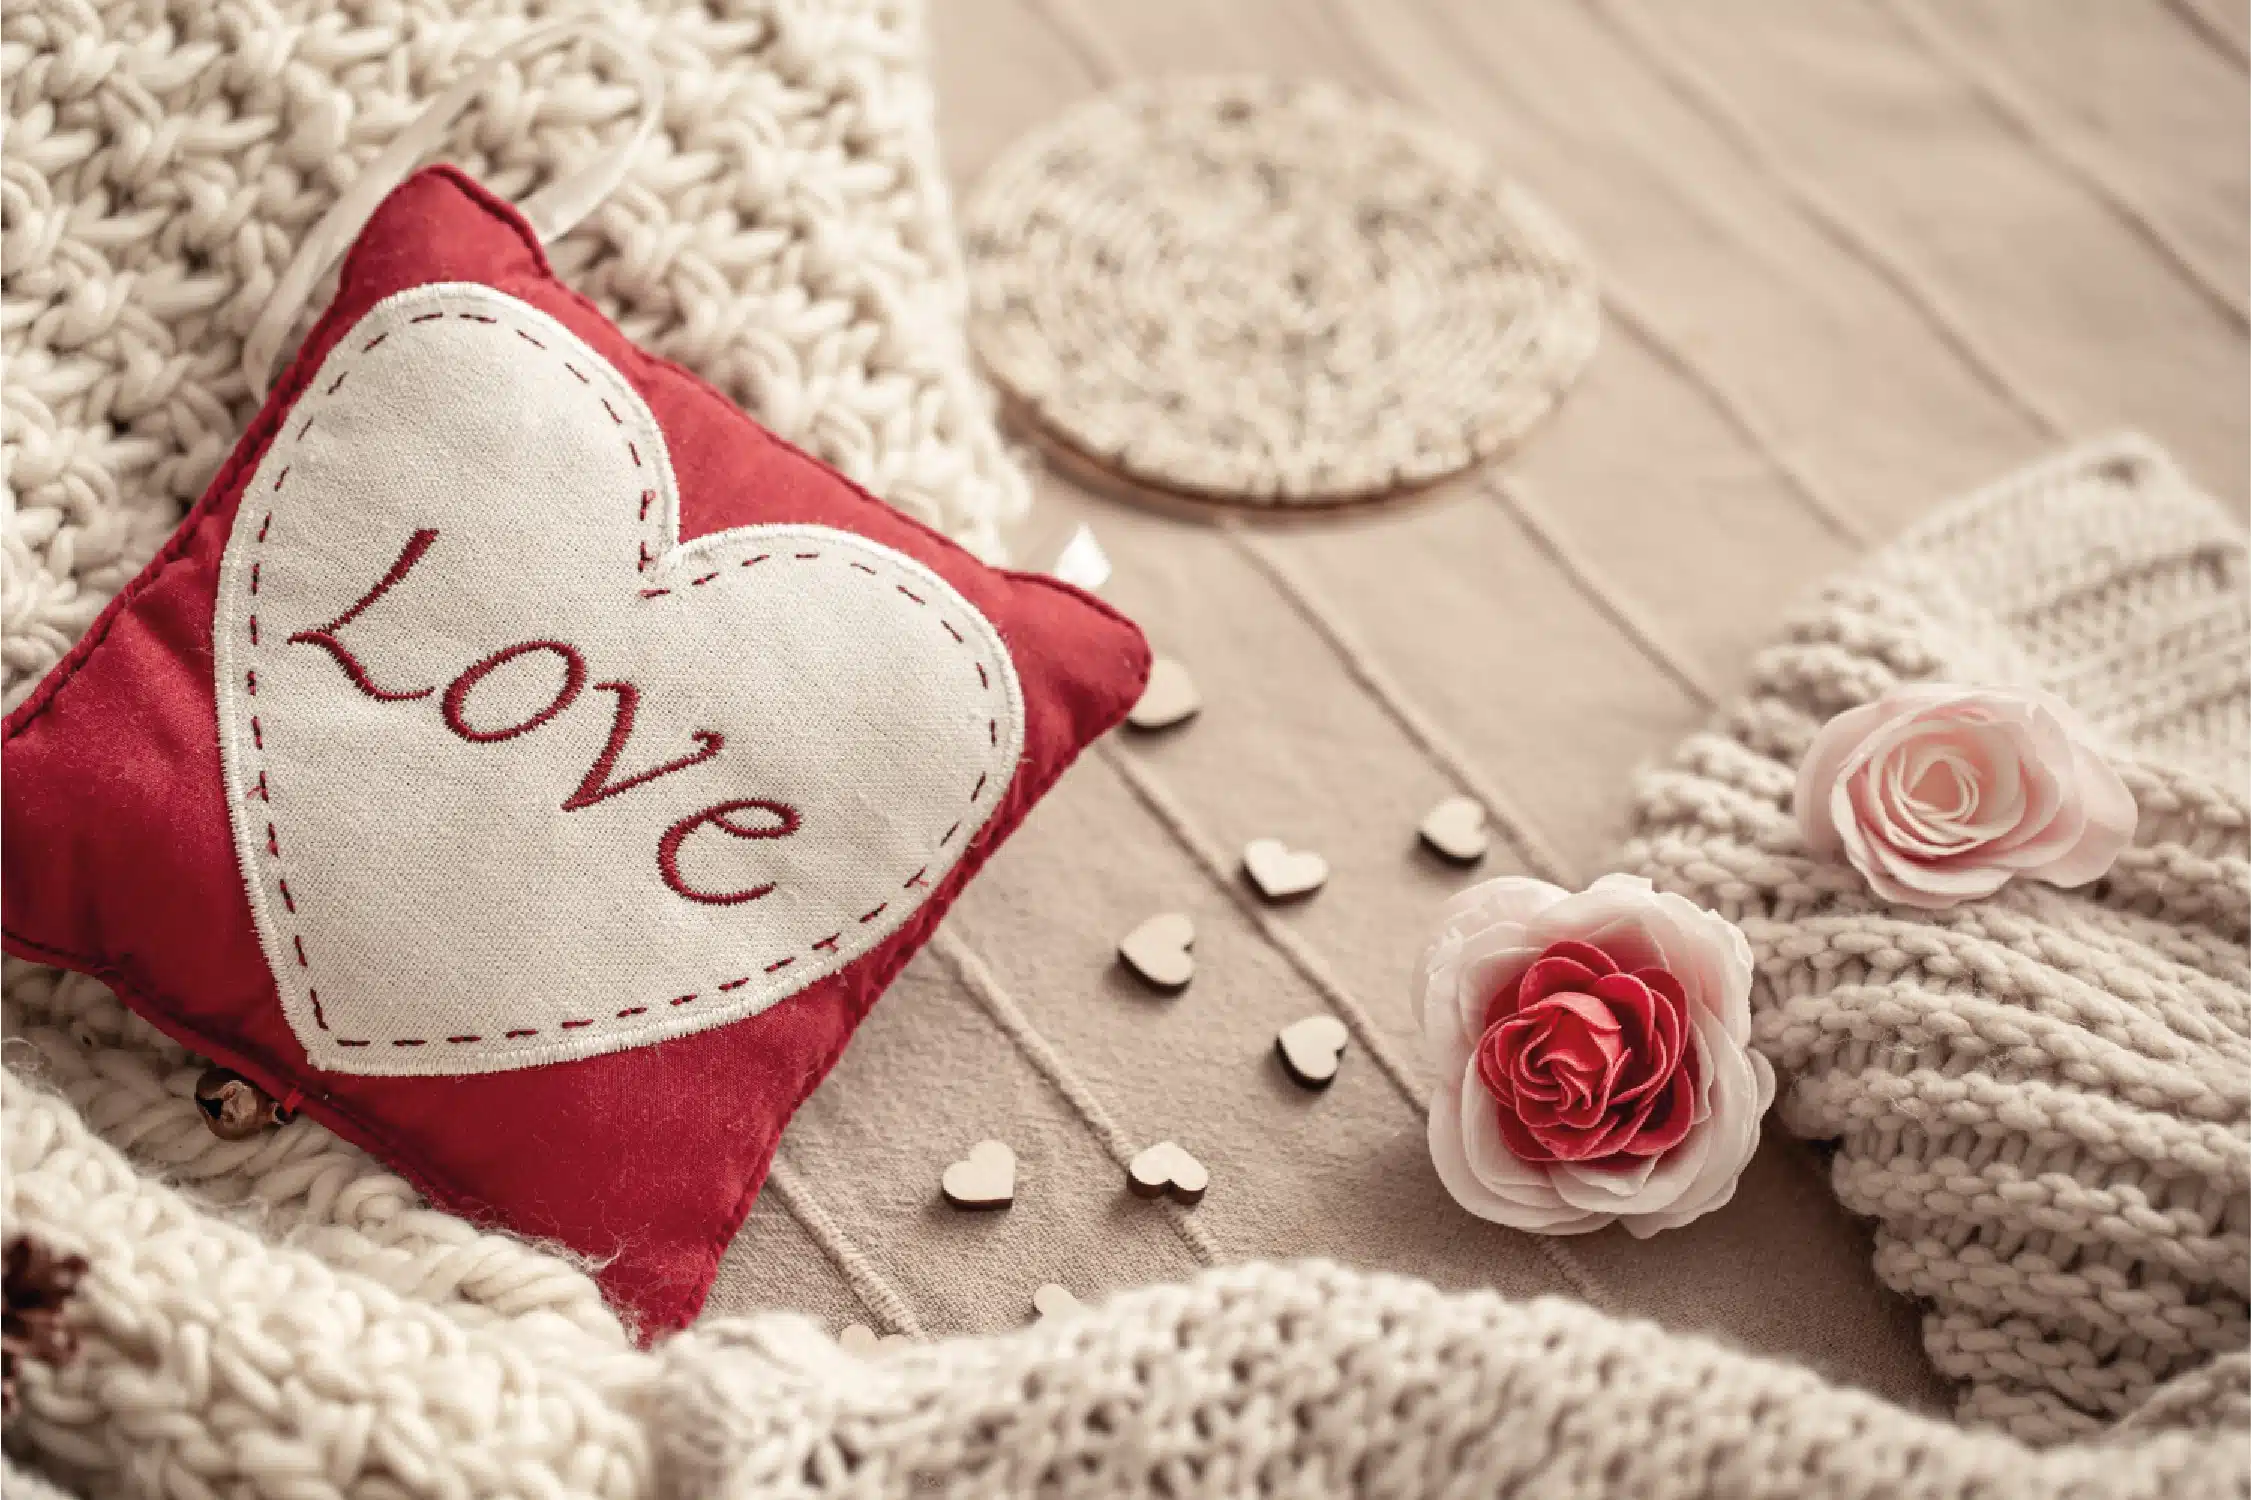 Estas sencillas manualidades para San Valentín para todos, desde mantas pintadas hasta plantas con mensajes. ¡Entra y haz tu favorito!